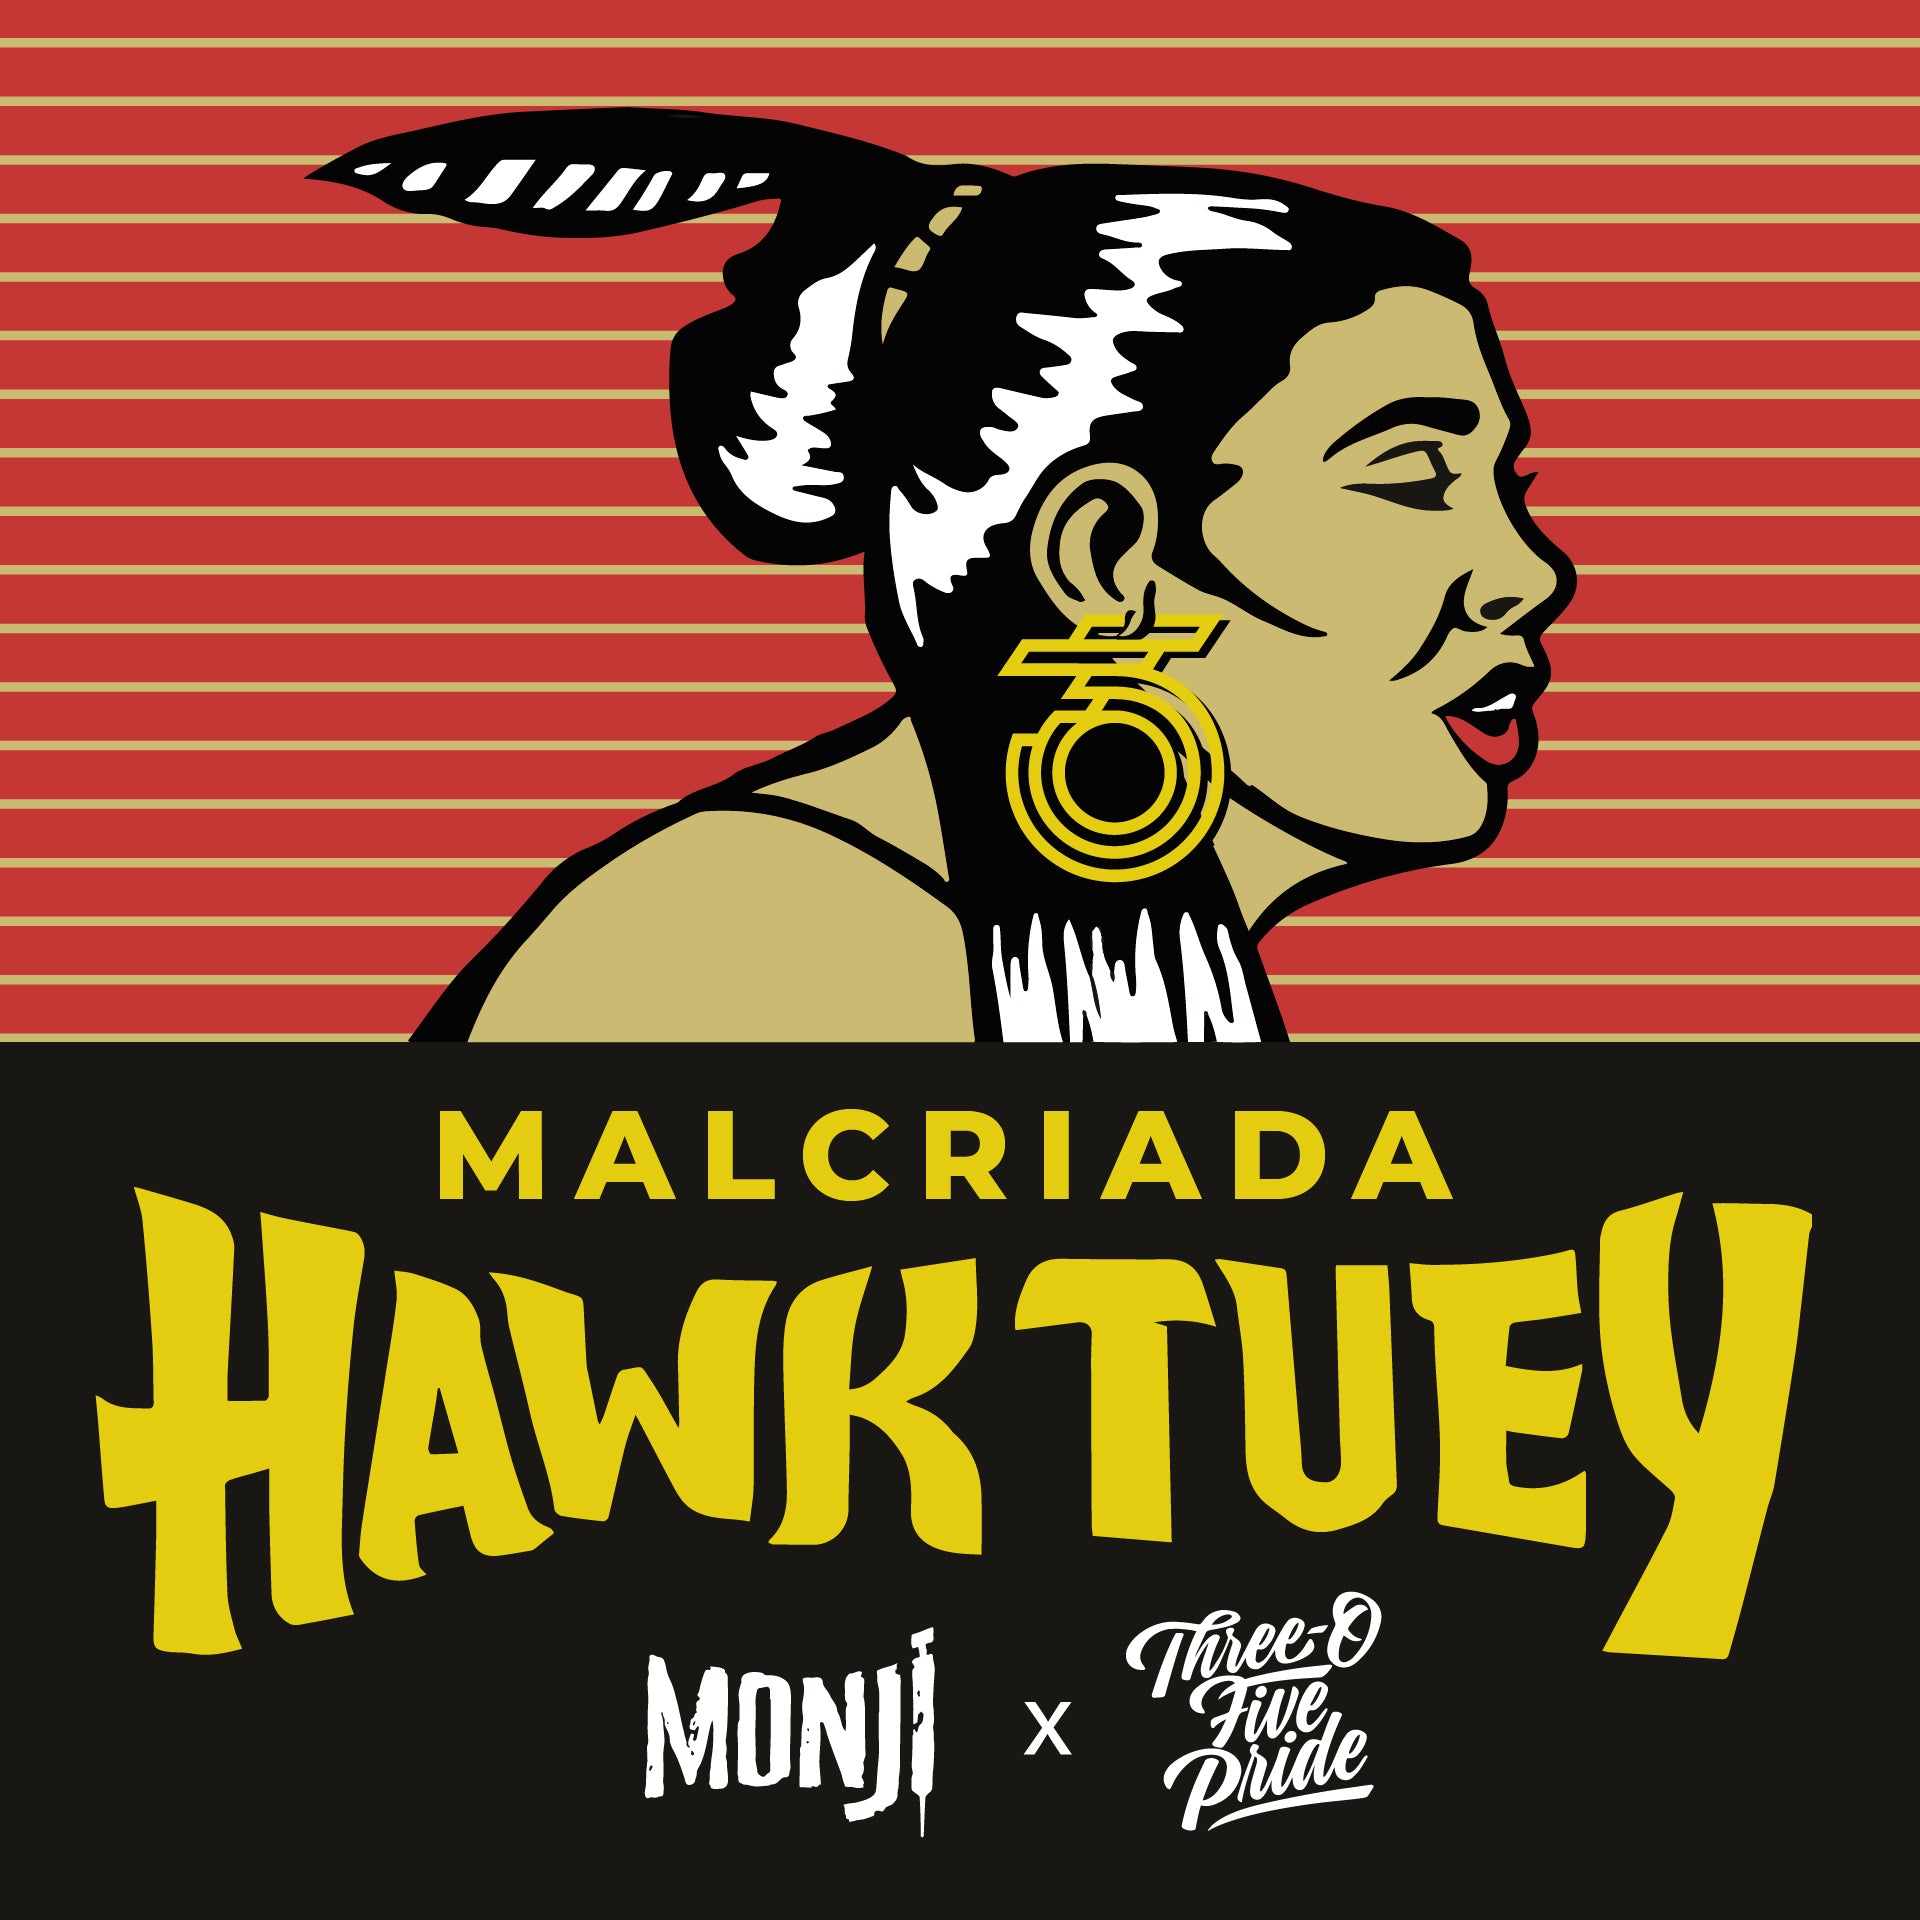 Hawktuey - Malcriada - New Drop and Bundle